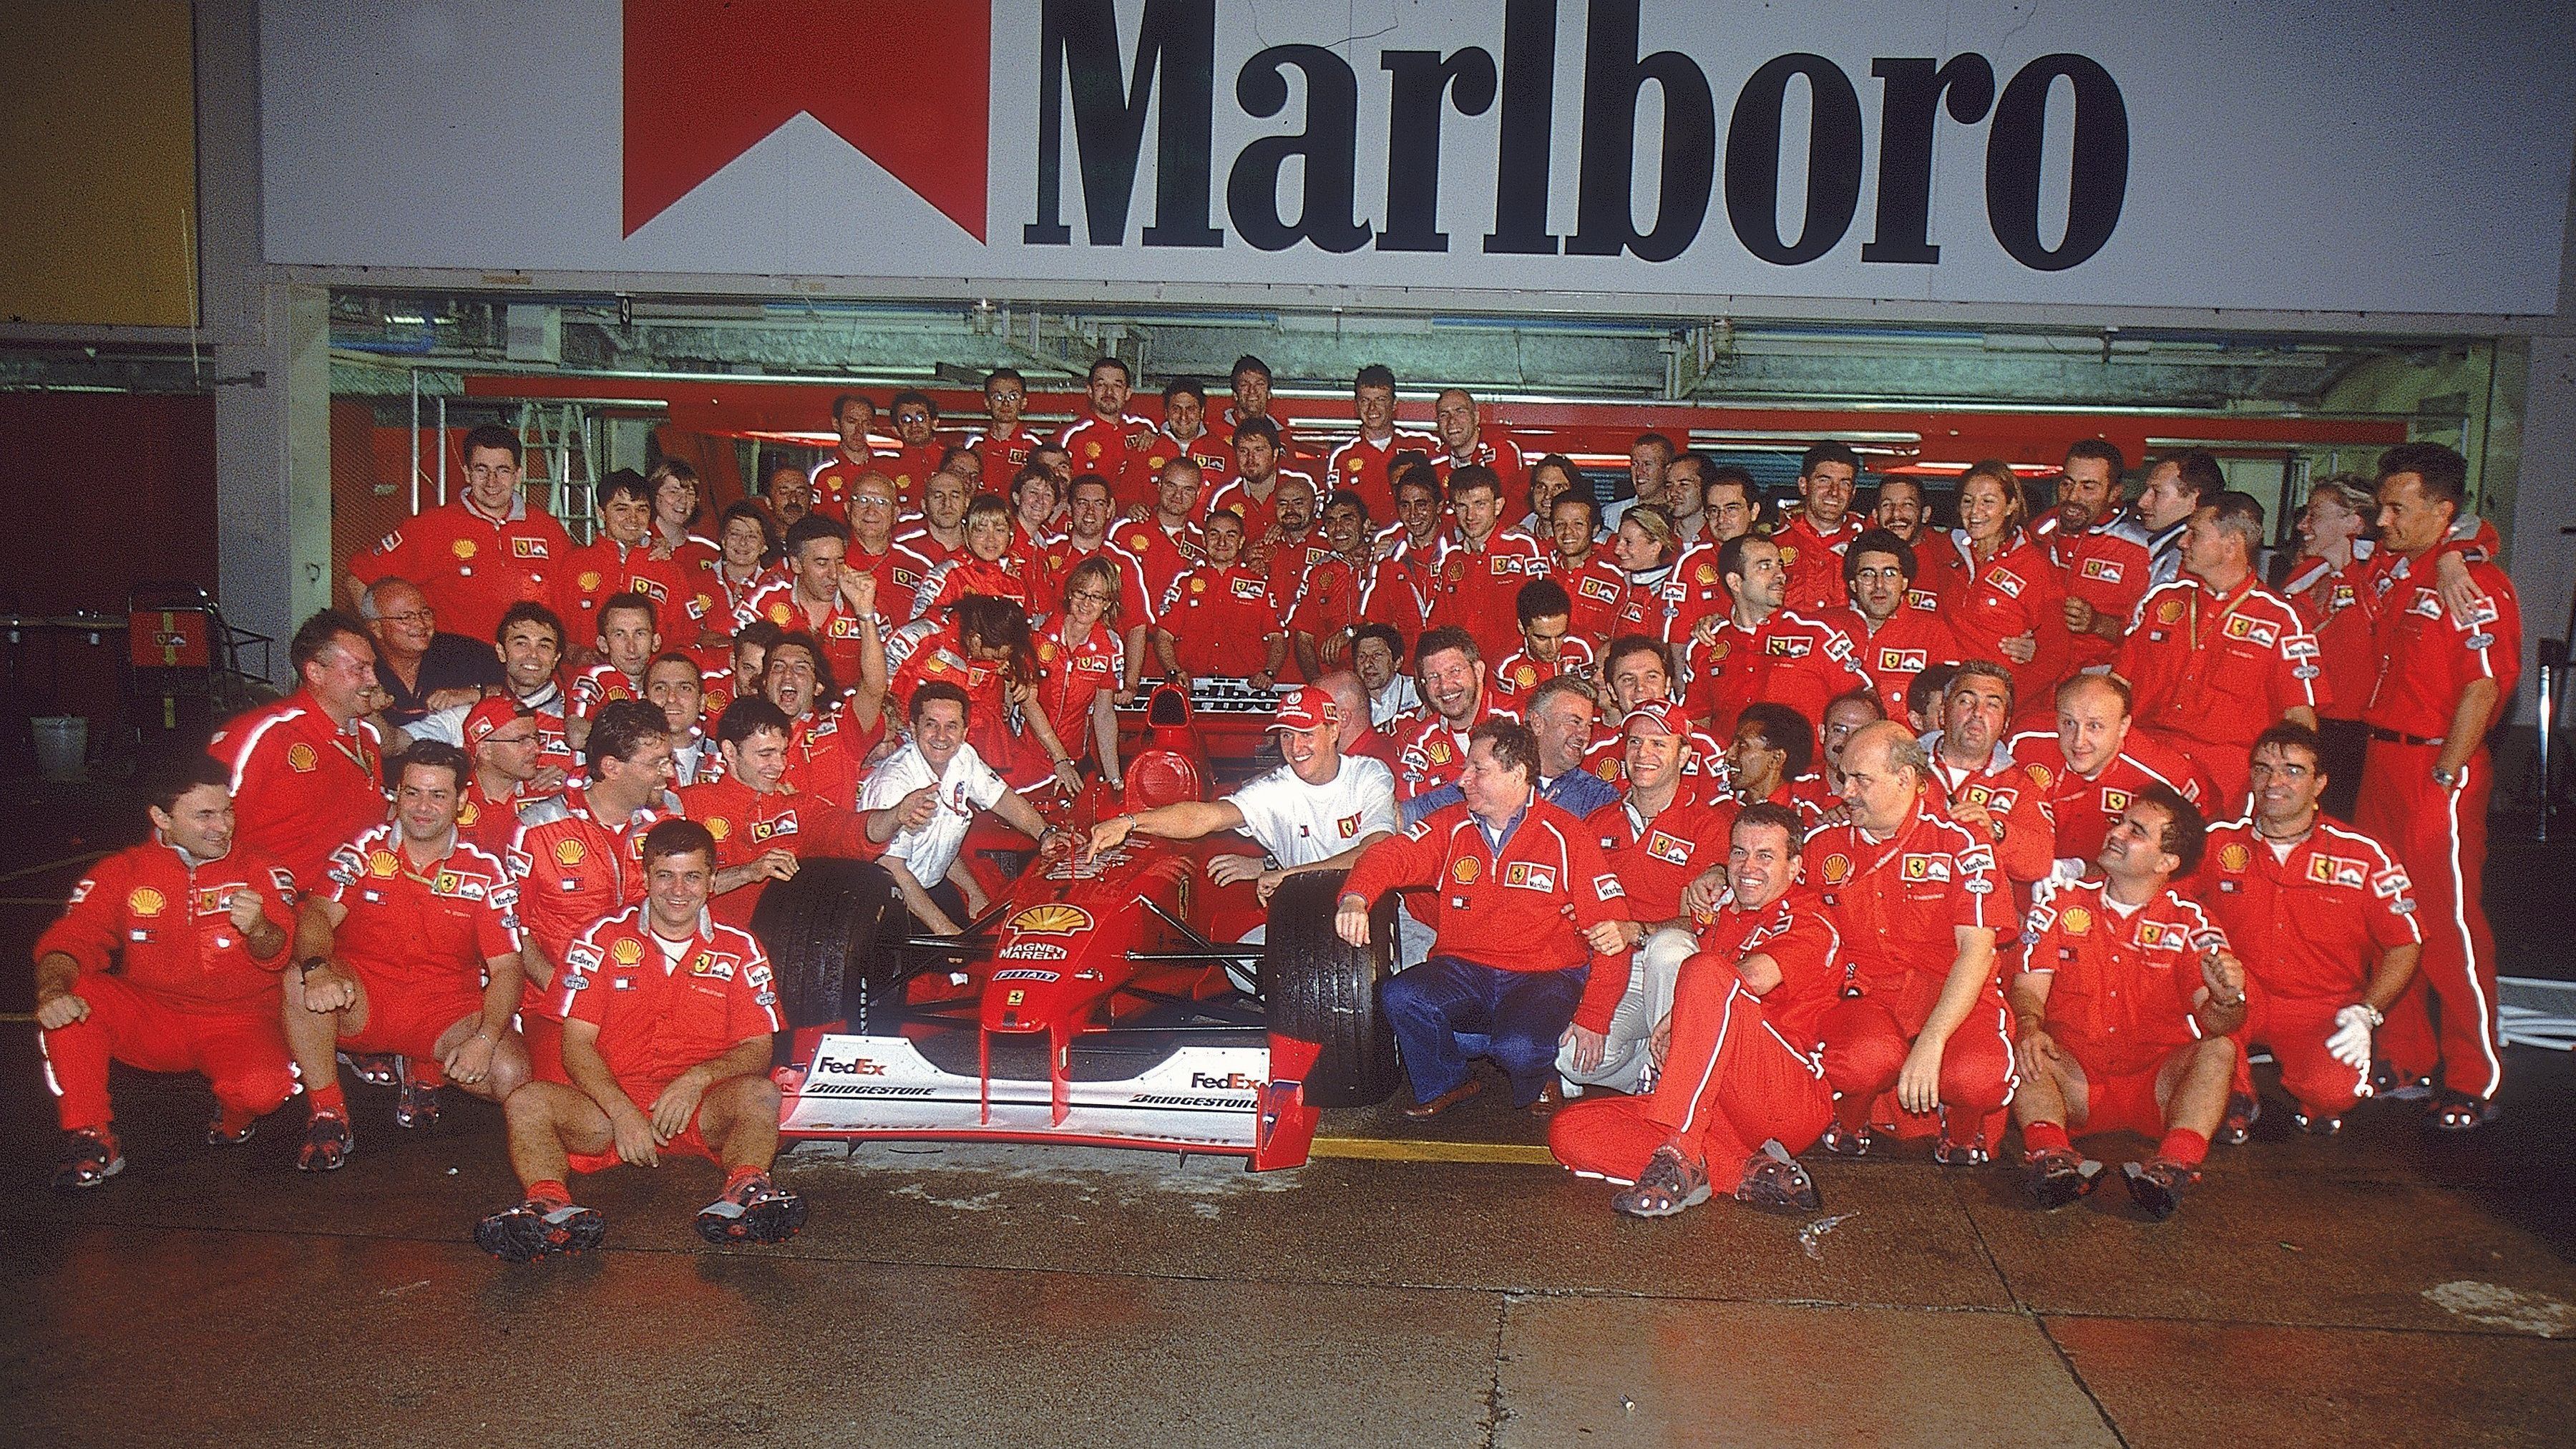 <strong>Erster WM-Titel mit Ferrari</strong><br>Im Jahr 2000 war es dann aber endlich so weit. Im vorletzten Saisonrennen in Suzuka machte Schumacher seinen ersten WM-Titel mit Ferrari perfekt, es war sein insgesamt dritter. Zudem holte er als erster Ferrari-Pilot seit Jody Scheckter 1979 die WM-Krone. Spätestens jetzt war Schumacher in den Olymp der Formel 1 aufgestiegen.